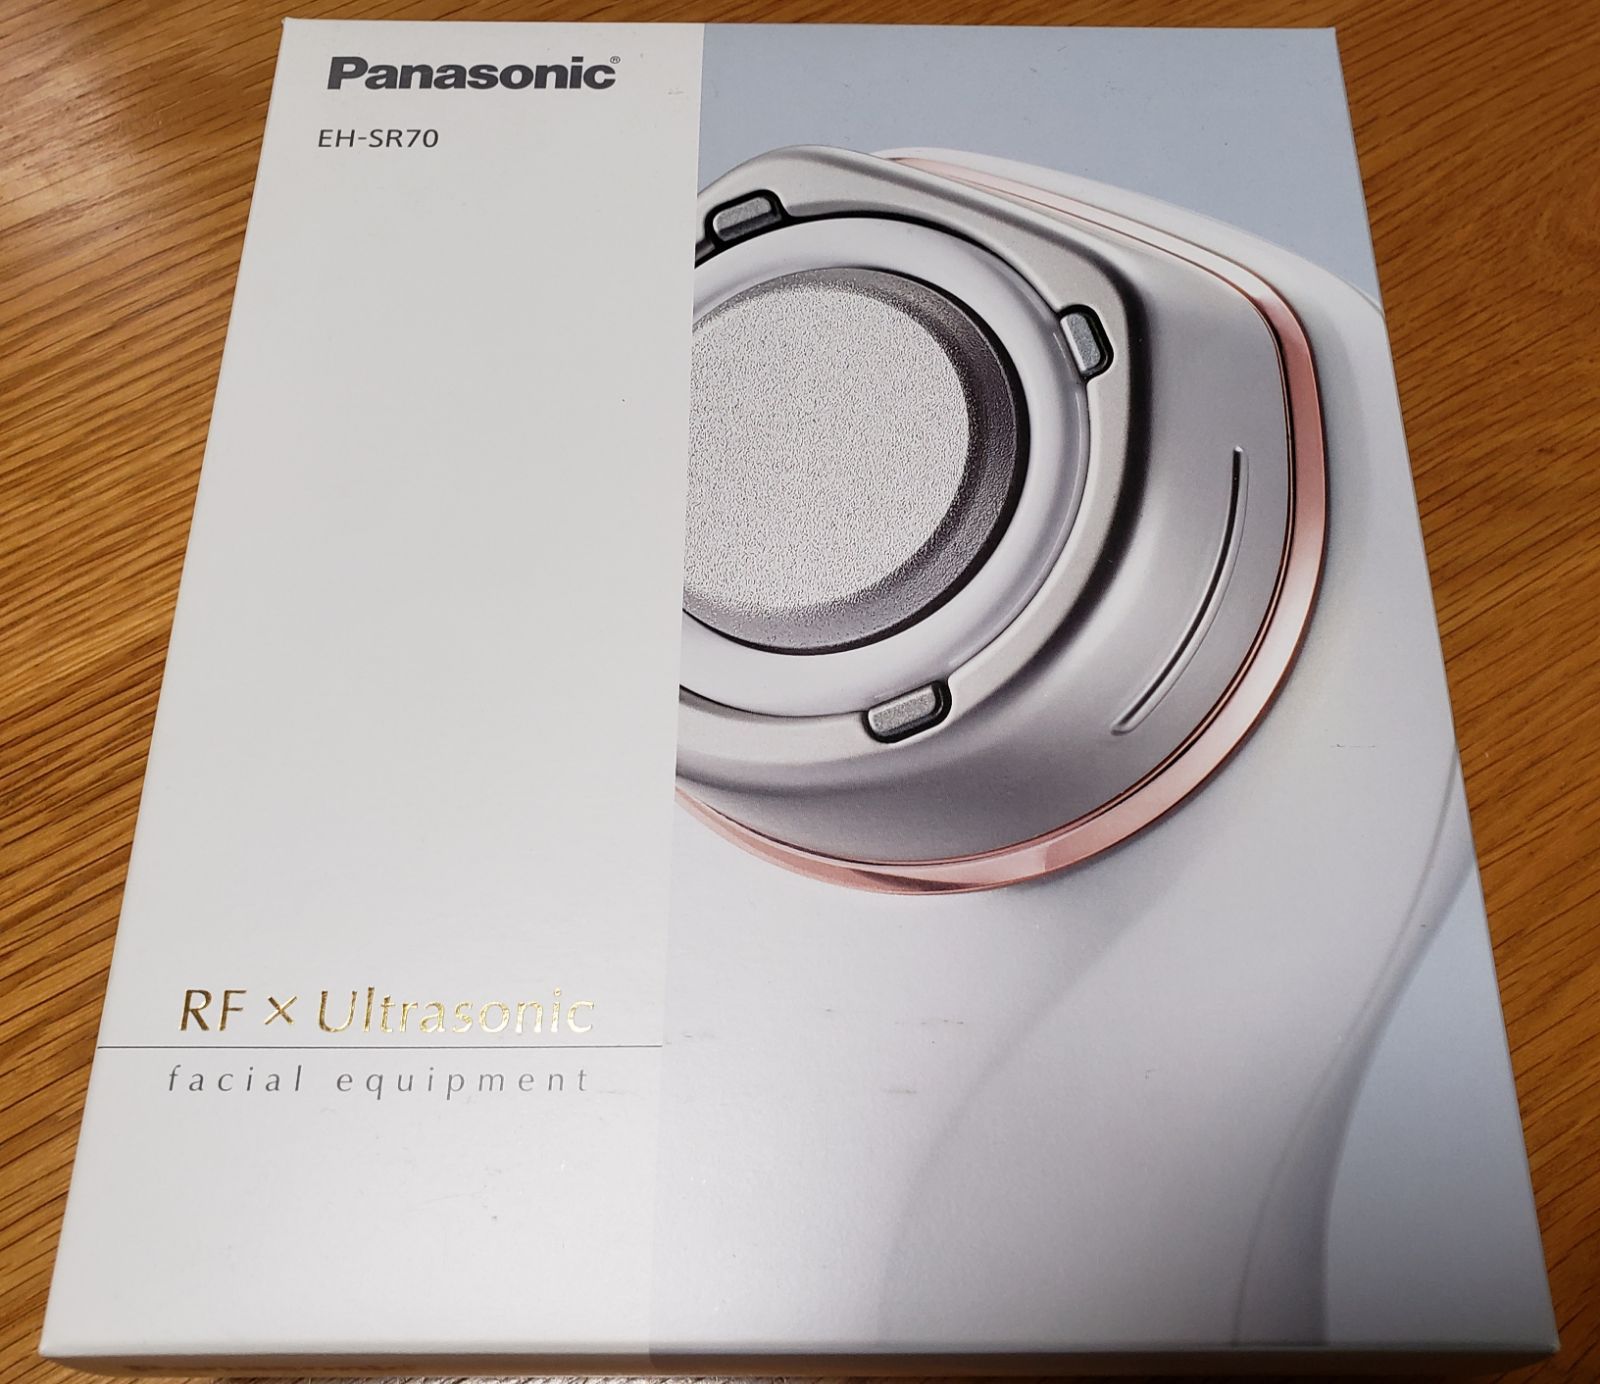 Panasonic EH-SR70-P  RF美容器【開封未使用】美顔器フェイスケア/美顔器